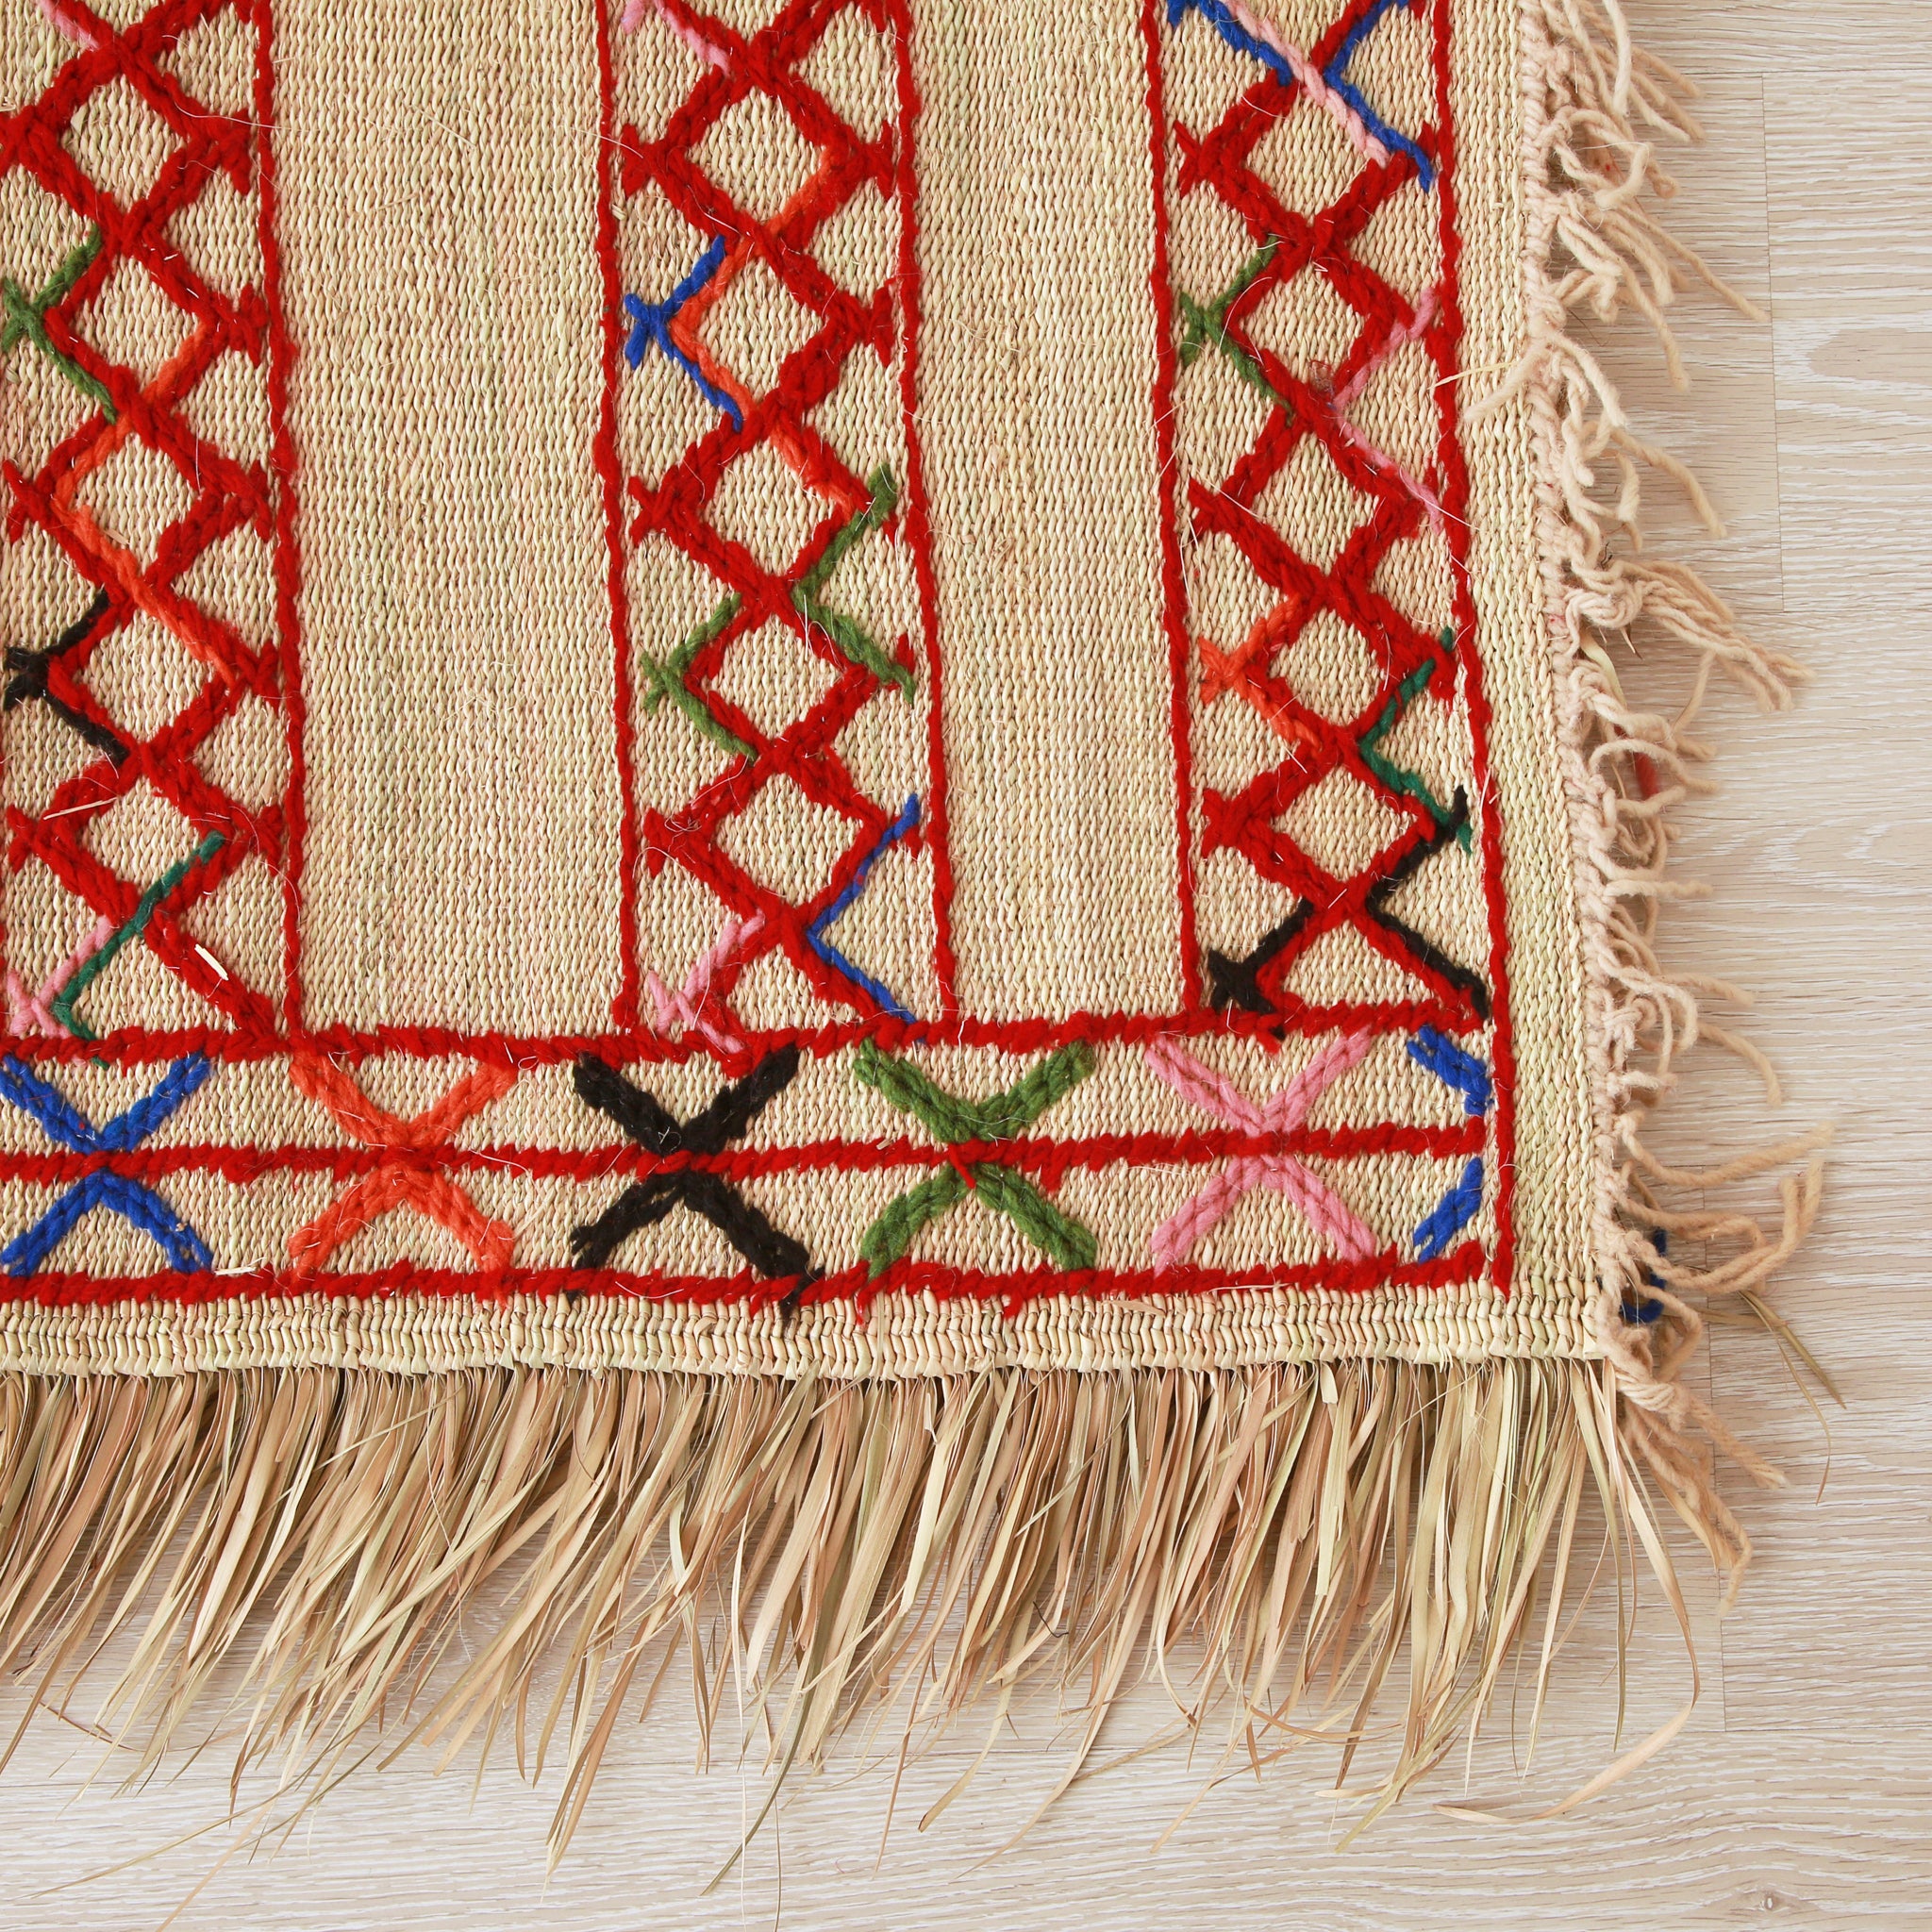 angolo di una stuoia hassira in paglia di palma con ricami in lana rossa blu verde e rosa